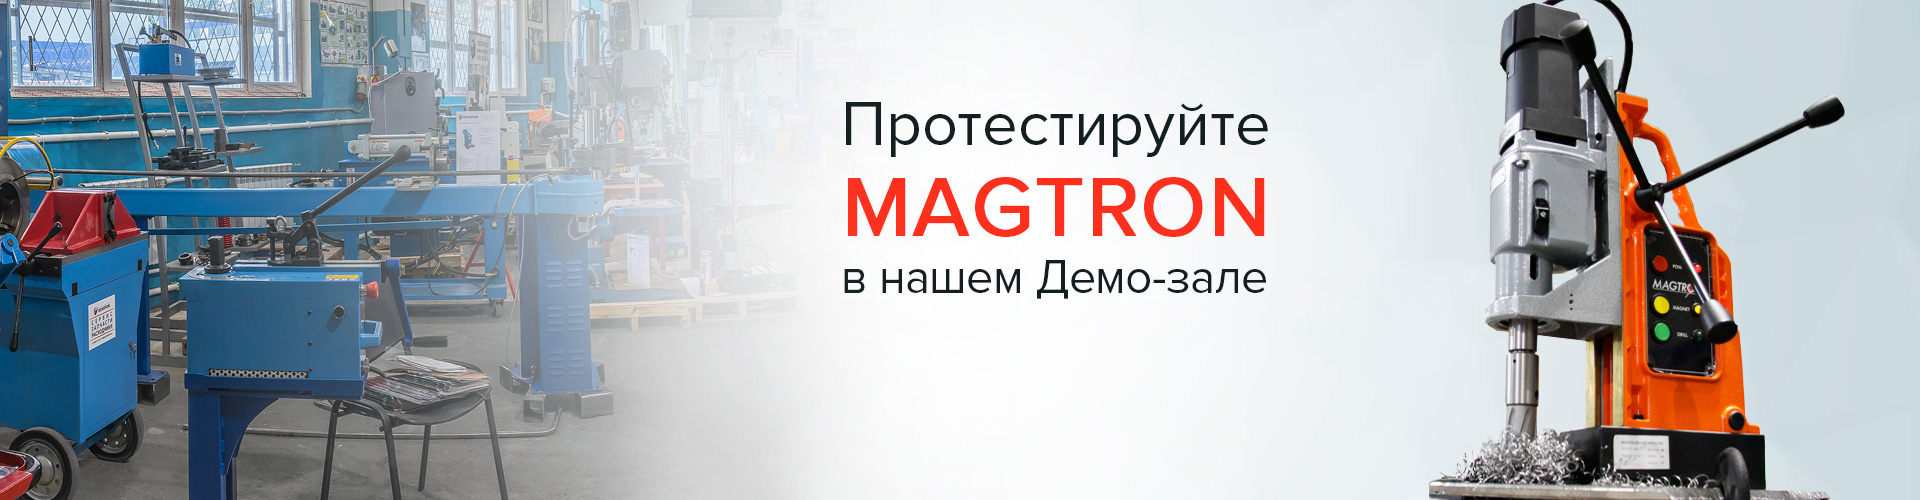 Официальное представительство Magtron в России. Магнитные станки